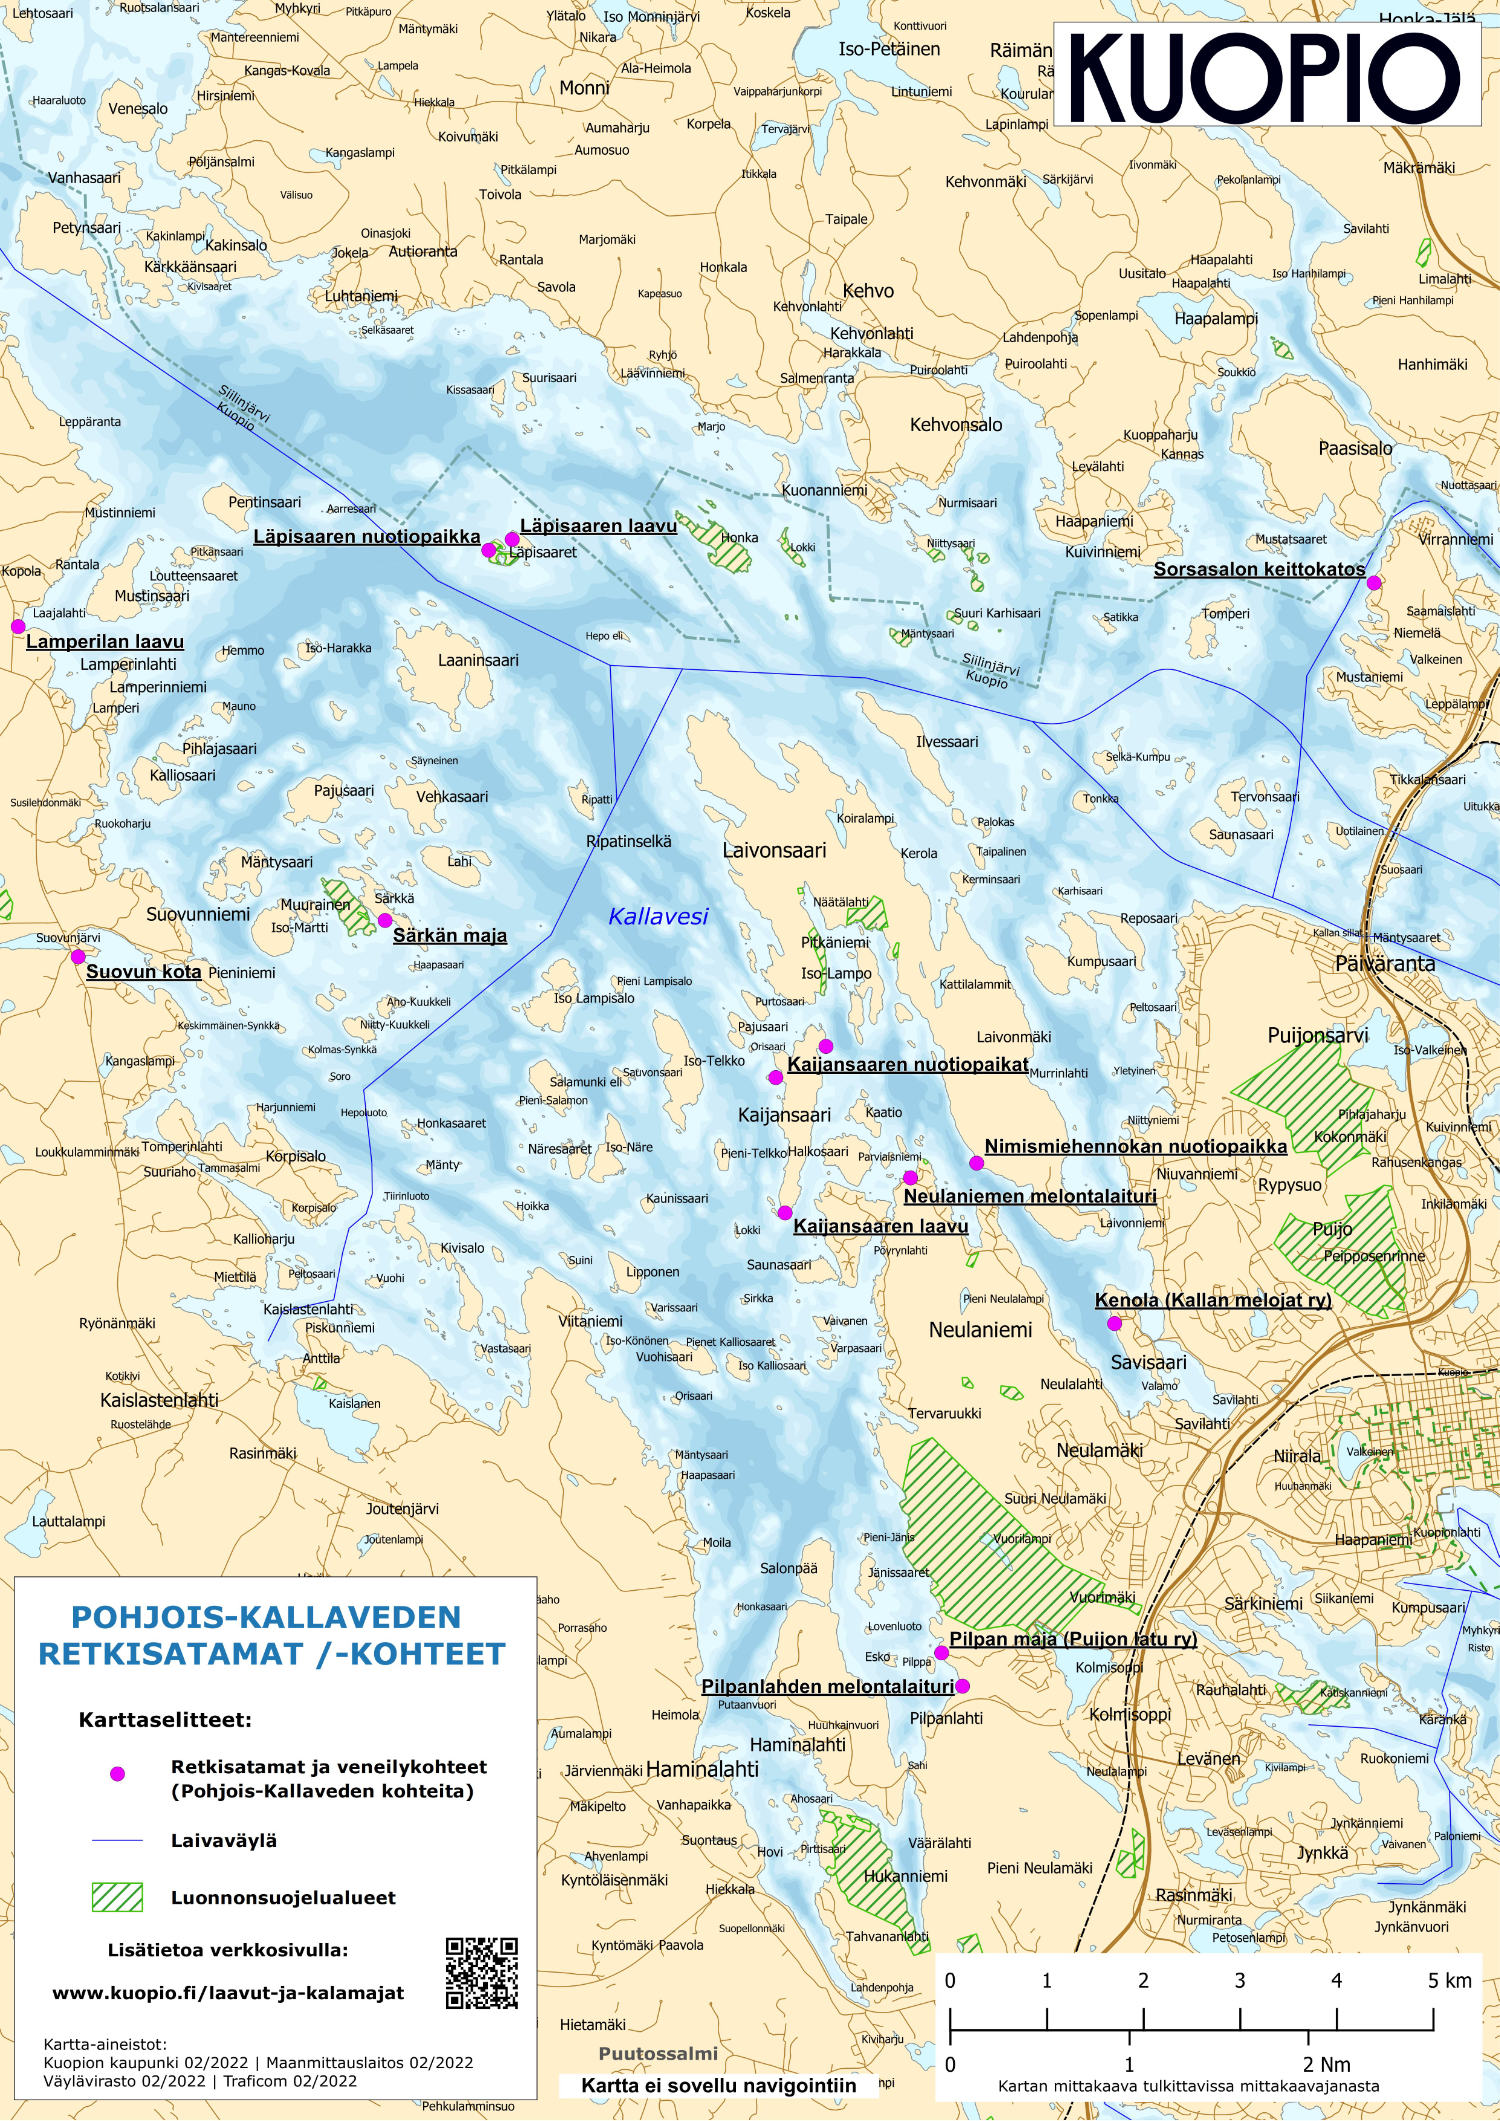 Kartta Pohjois-Kallaveden retkisatamista